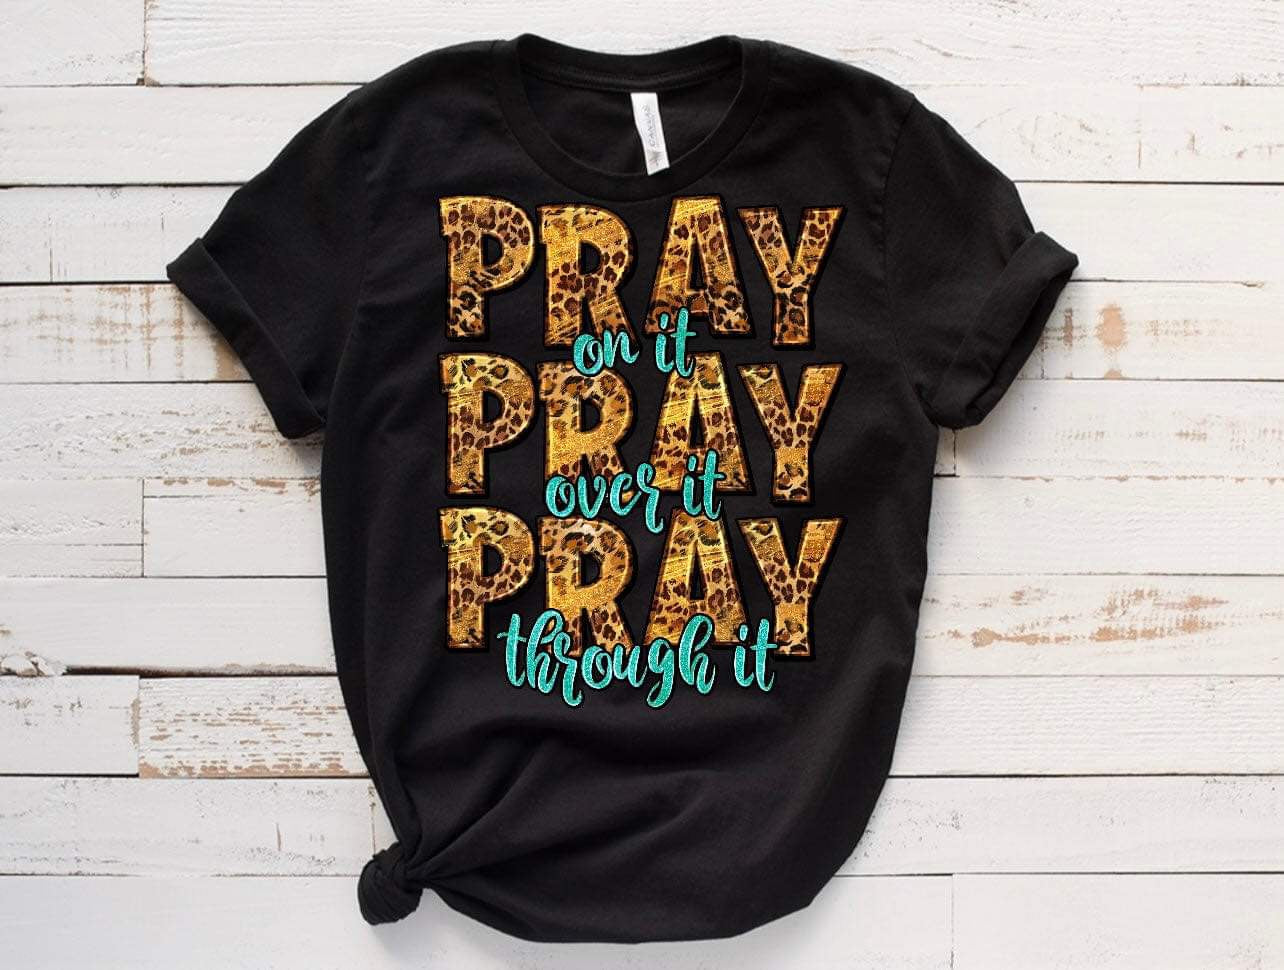 PRAY PRAY PRAY /10” DTF TRANSFER